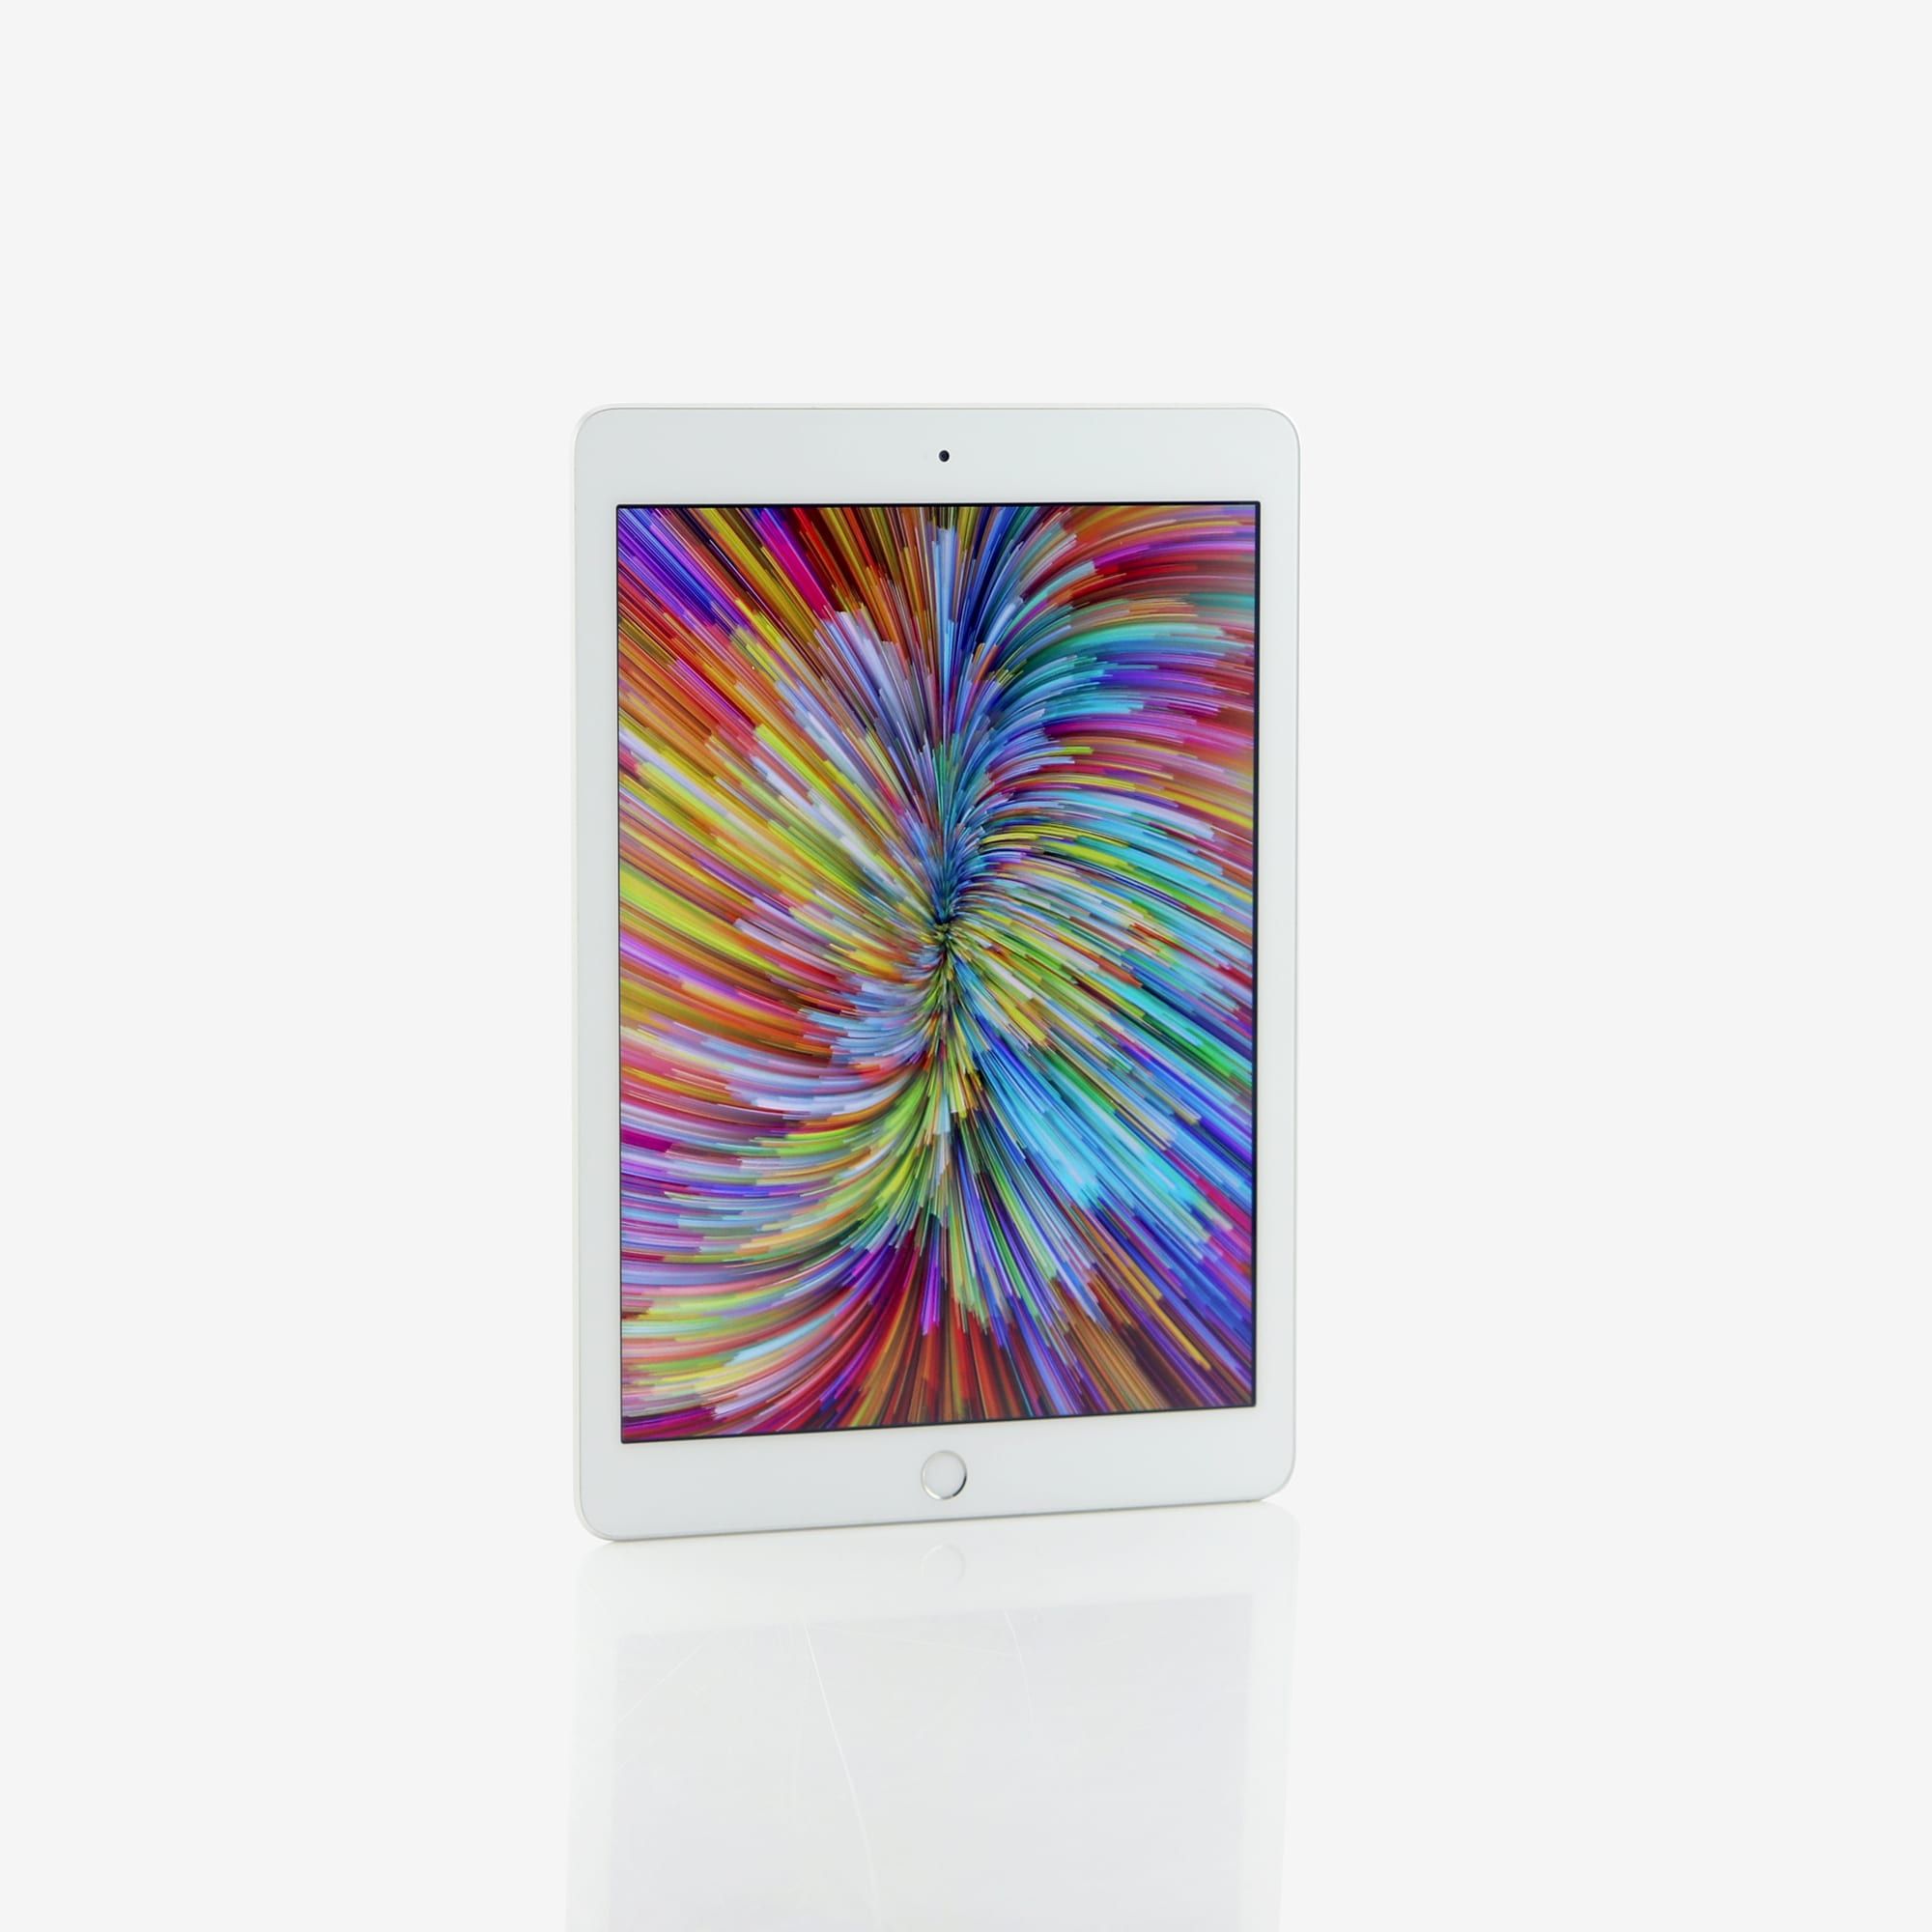 1 x iPad (5th generation, Wi-Fi) Silver (2017)